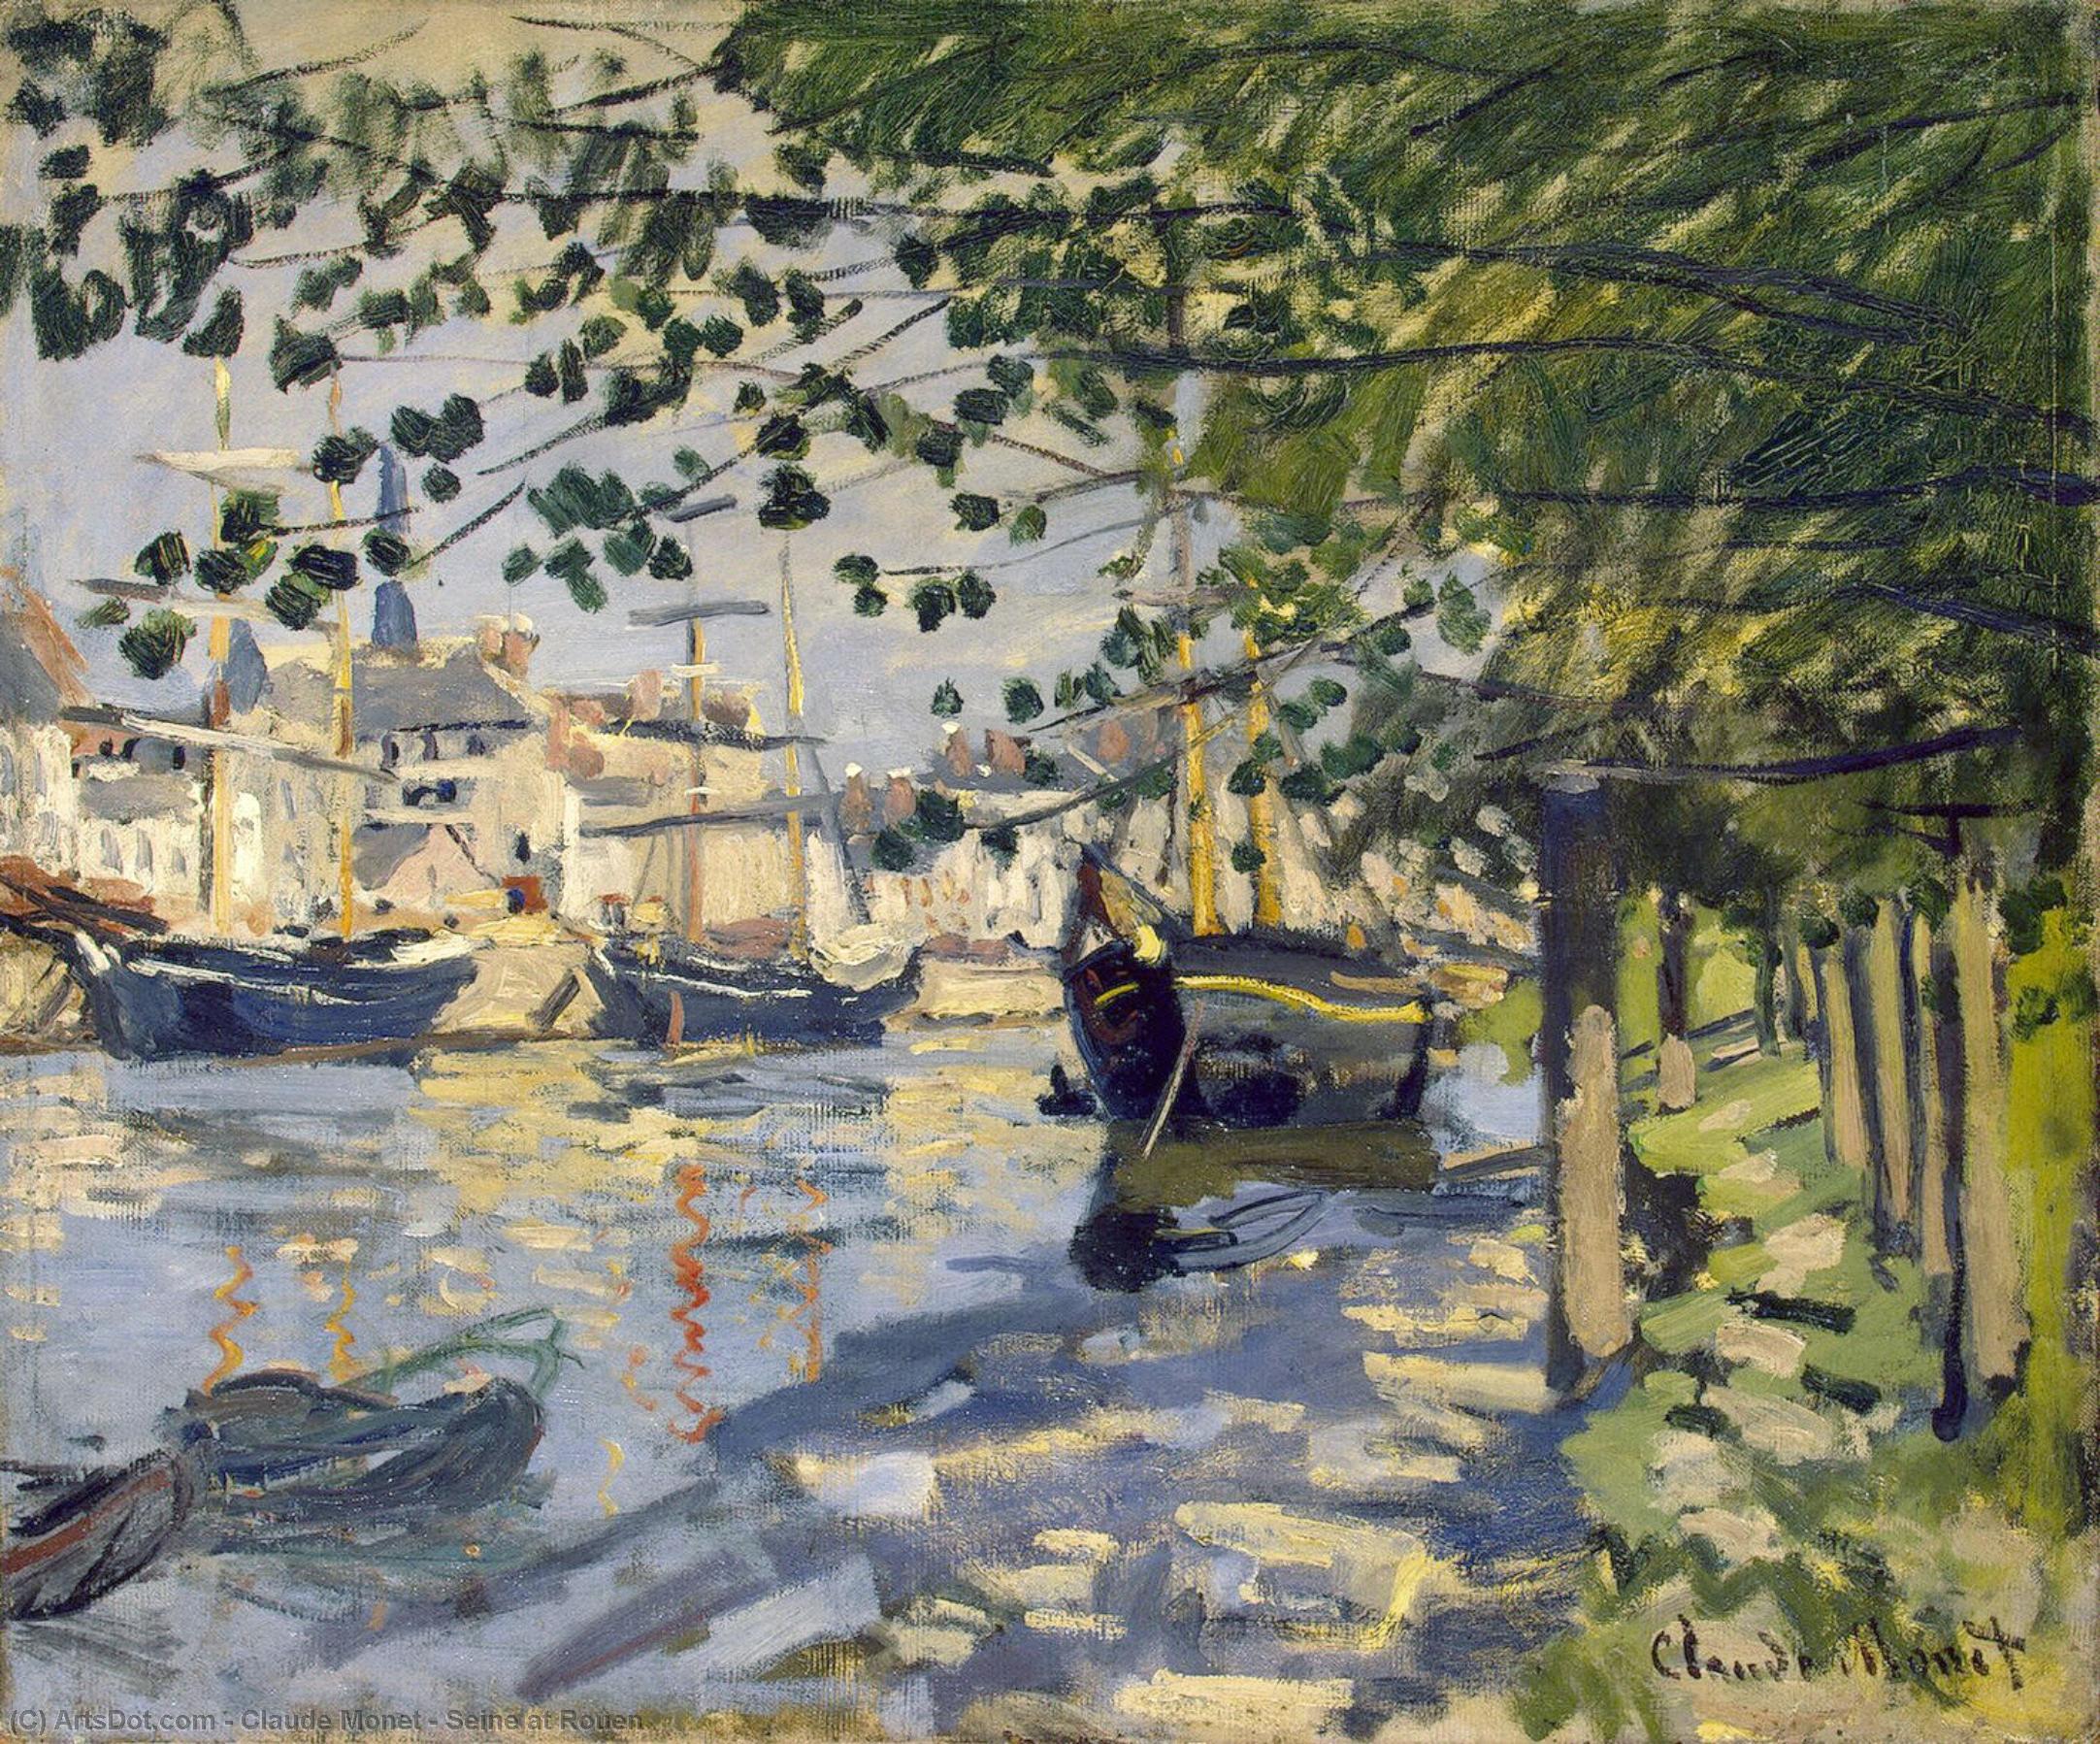 Wikioo.org - Encyklopedia Sztuk Pięknych - Malarstwo, Grafika Claude Monet - Seine at Rouen